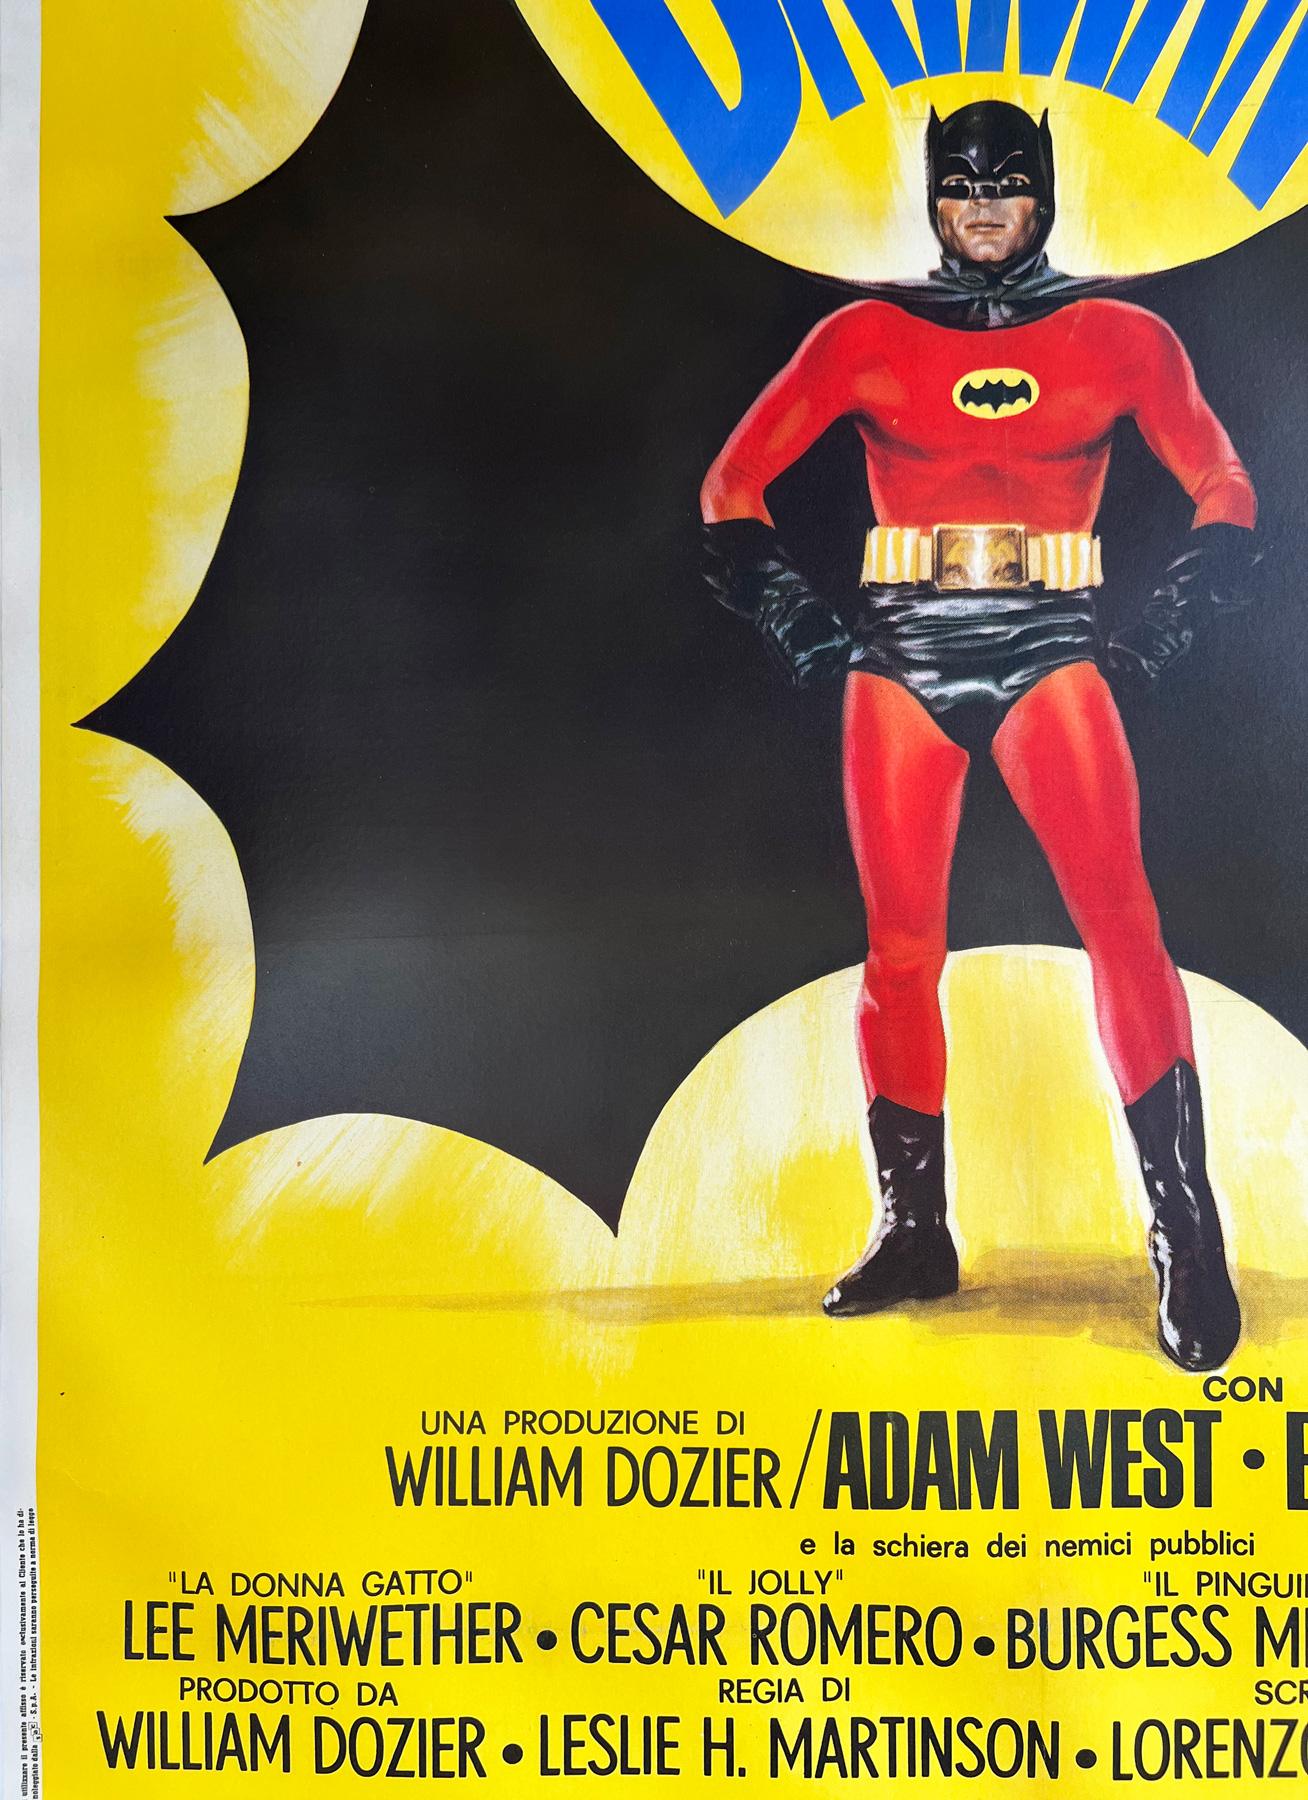 batman 1966 poster